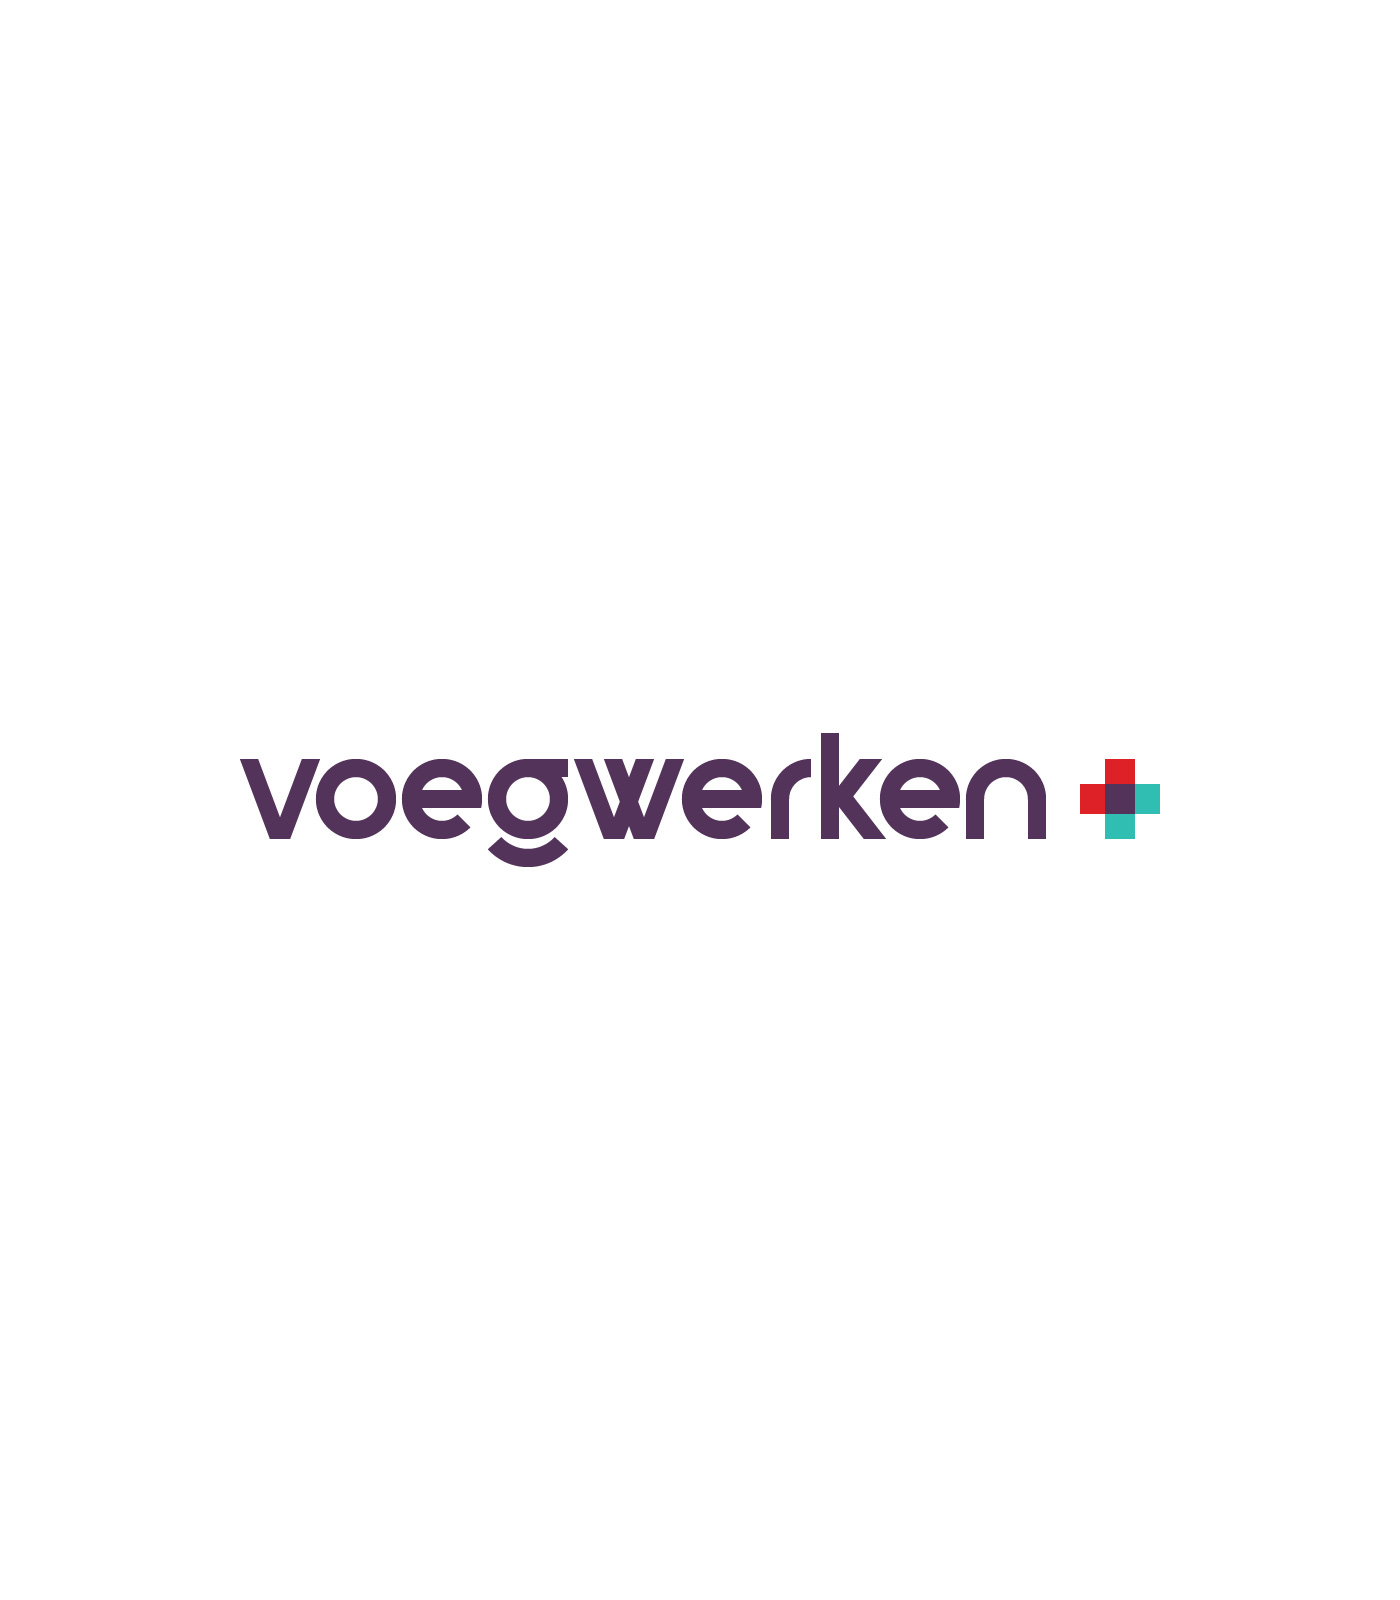 Voegwerken + by YIL